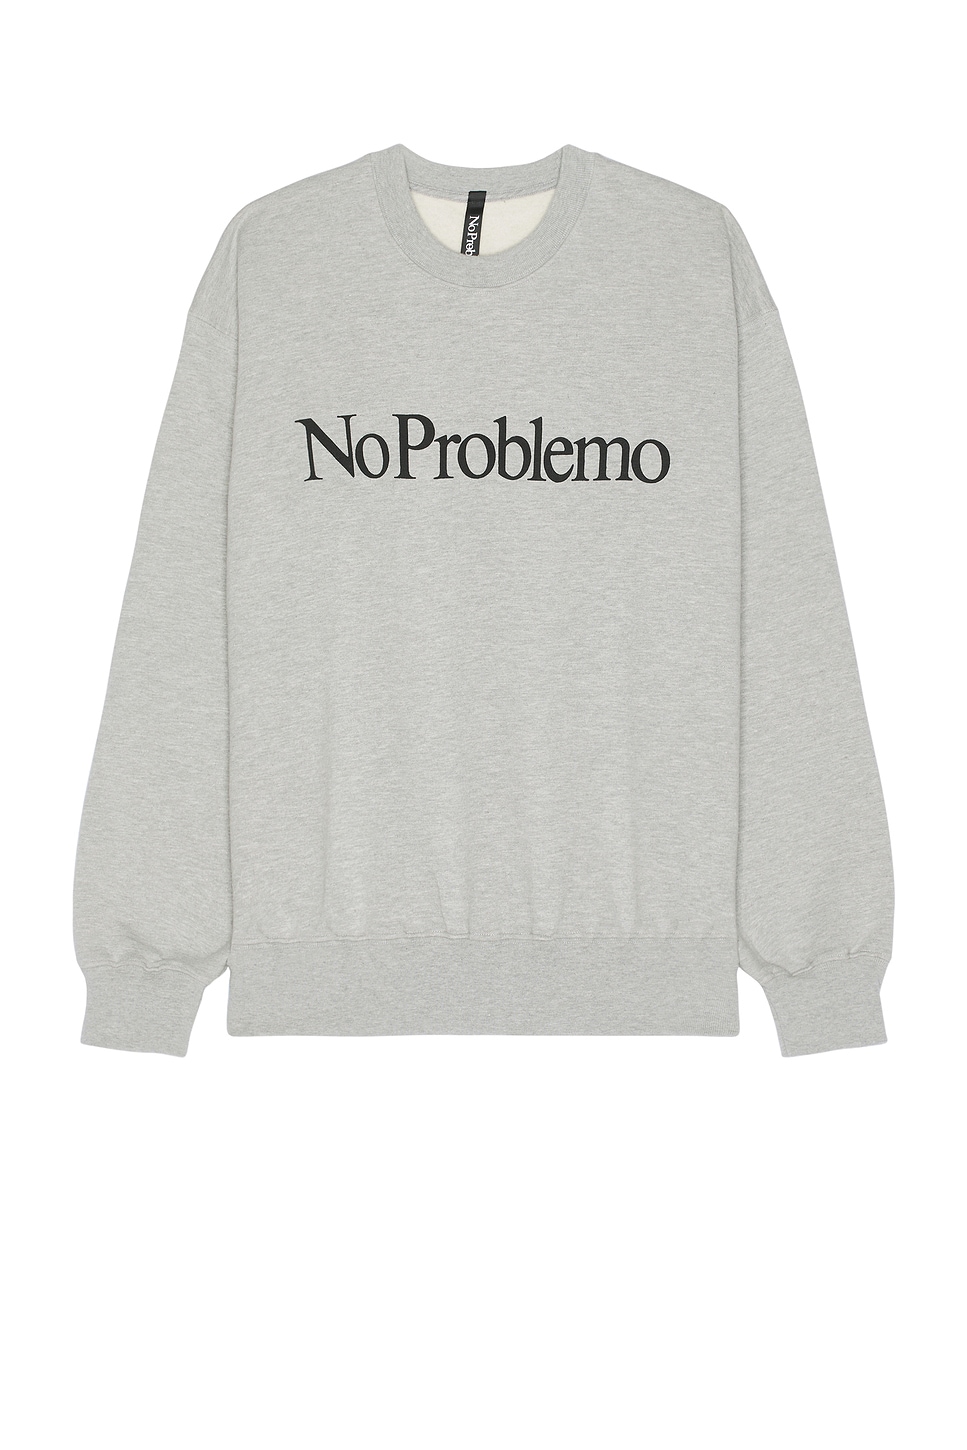 Image 1 of No Problemo Sweatshirt in Grey Marl